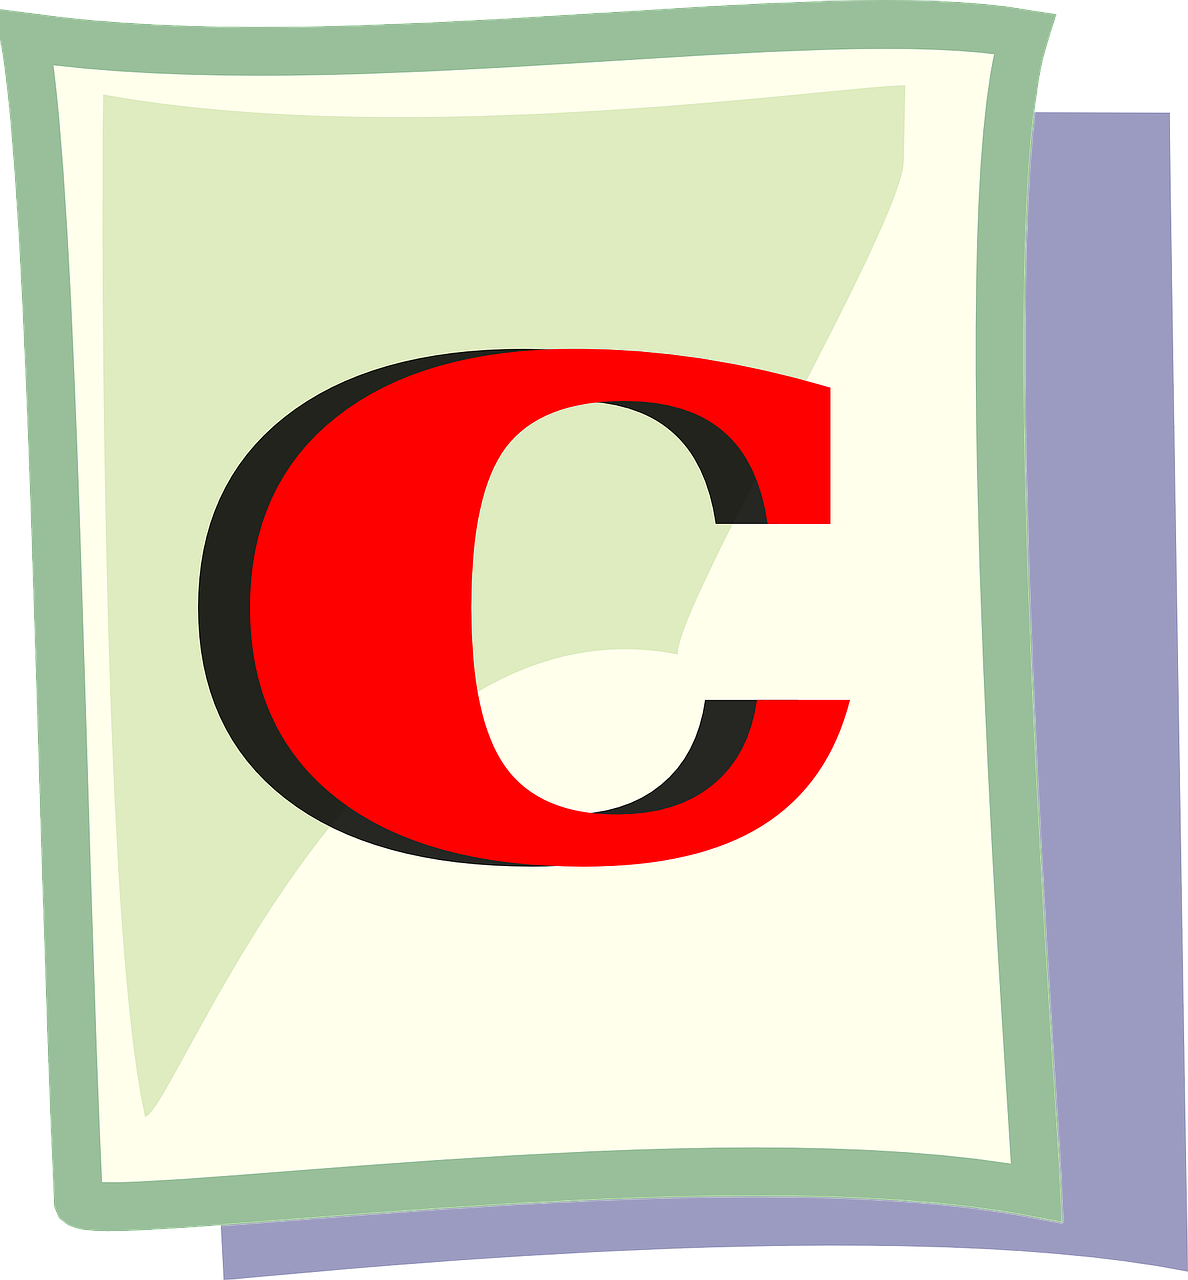 Pixabay Grade of C